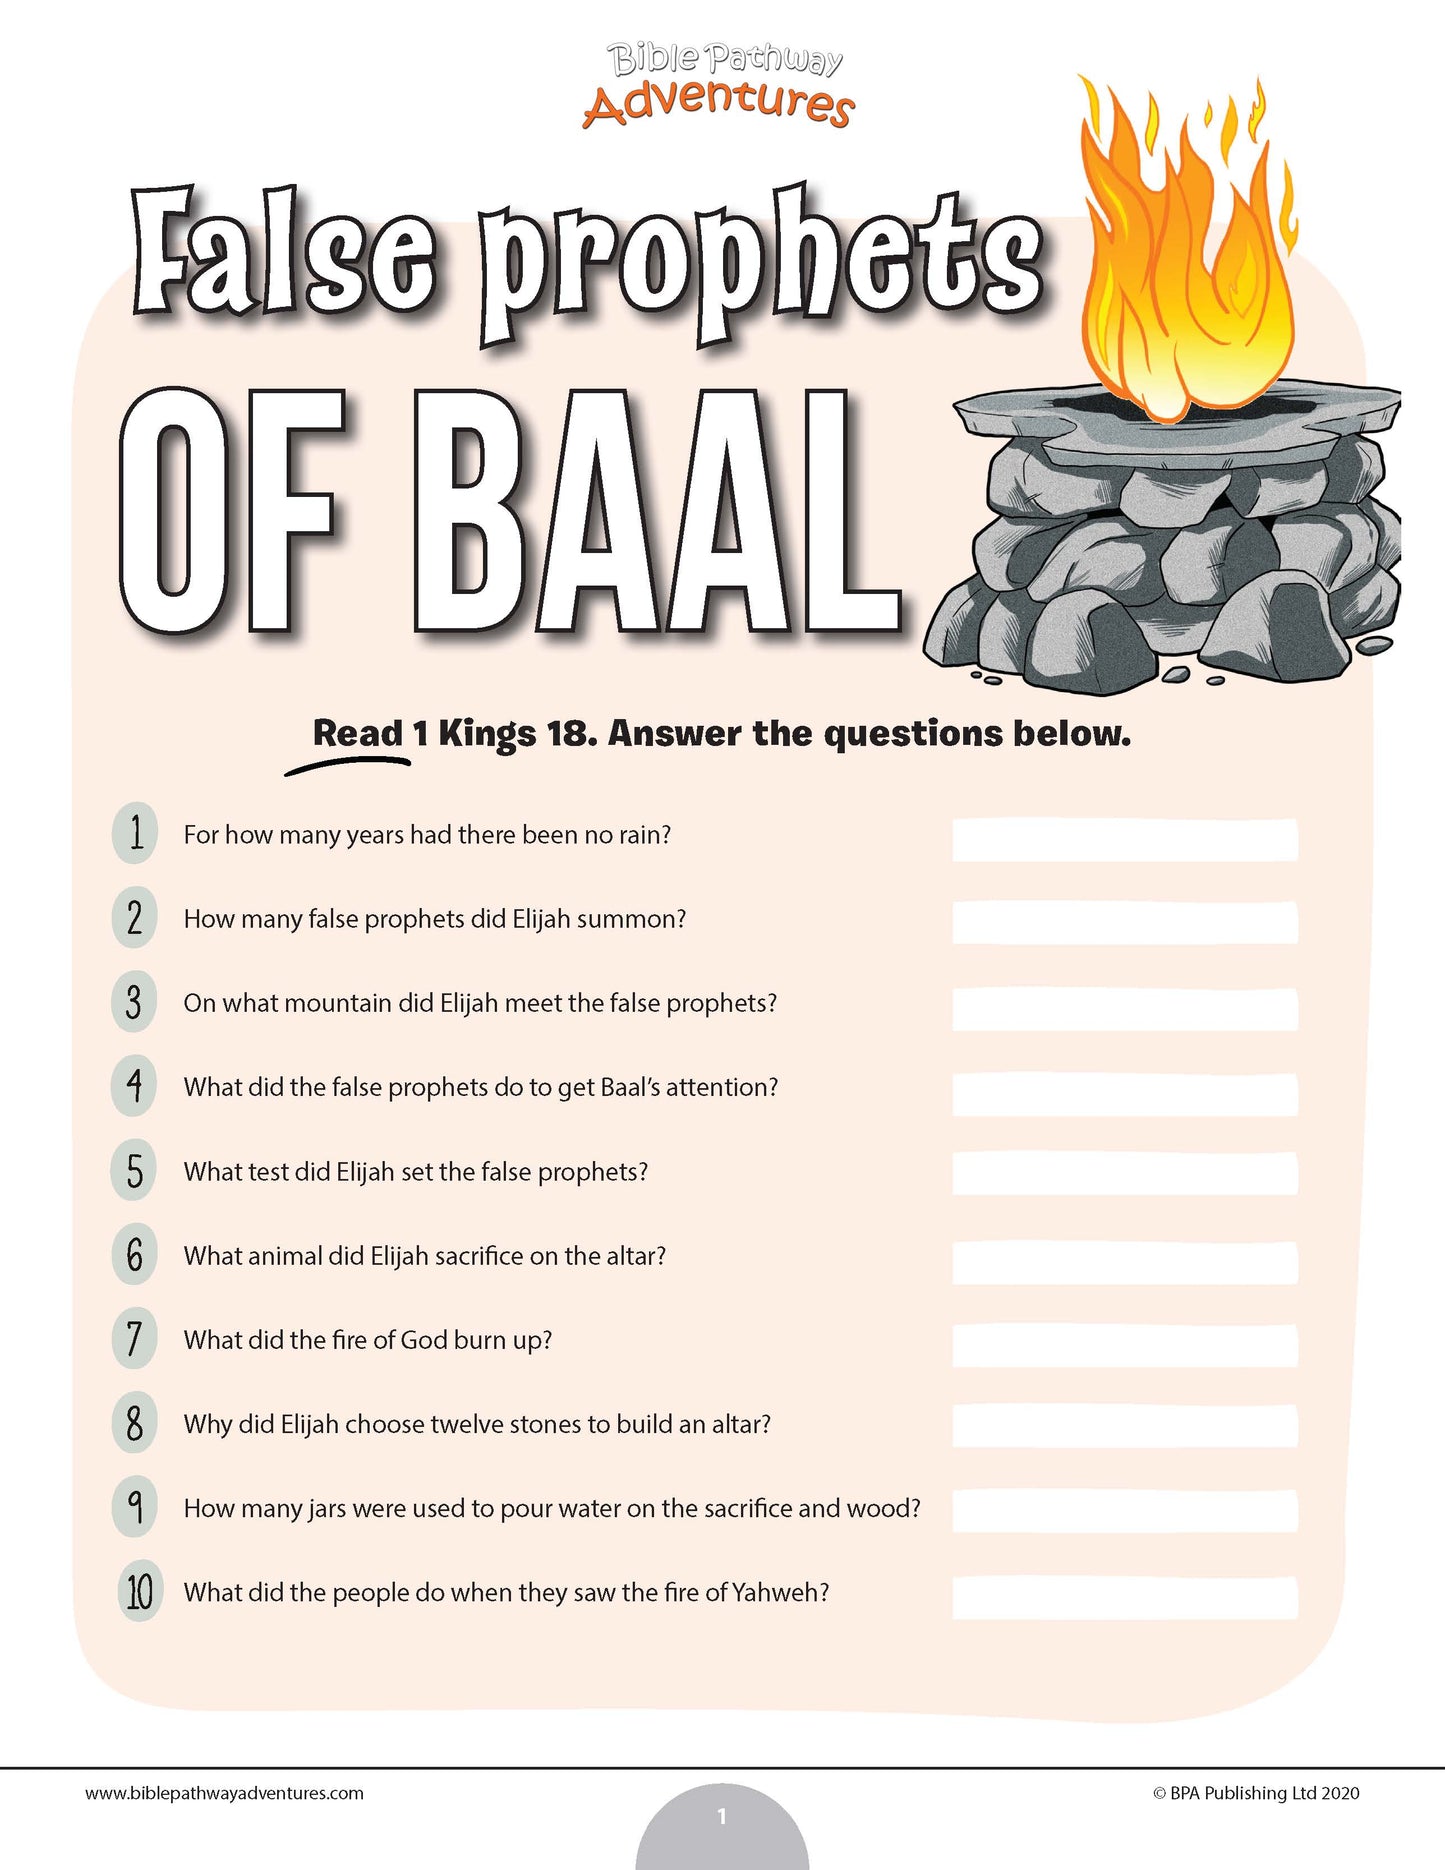 Prueba de los falsos profetas de Baal